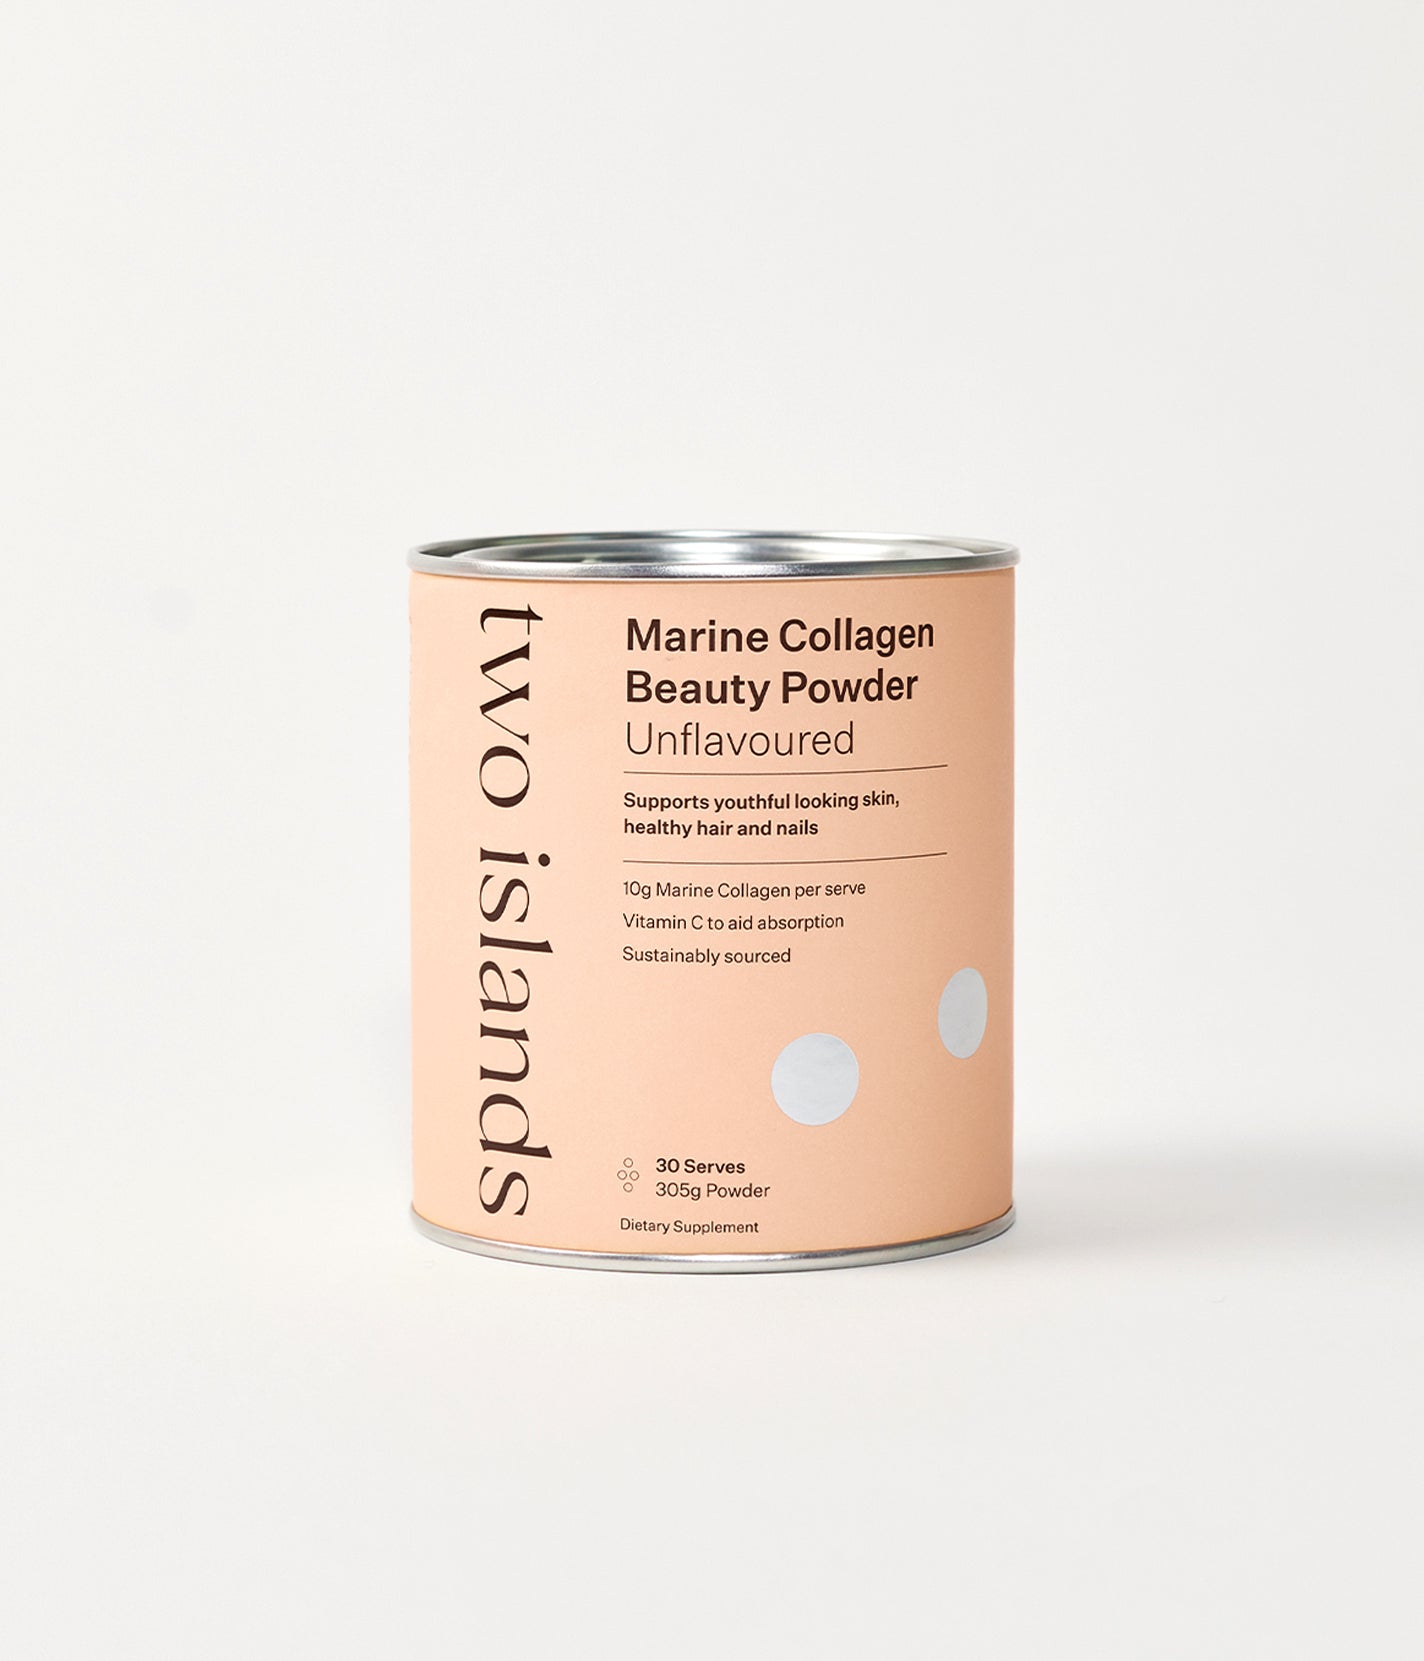 Marine Collagen Beauty Powder